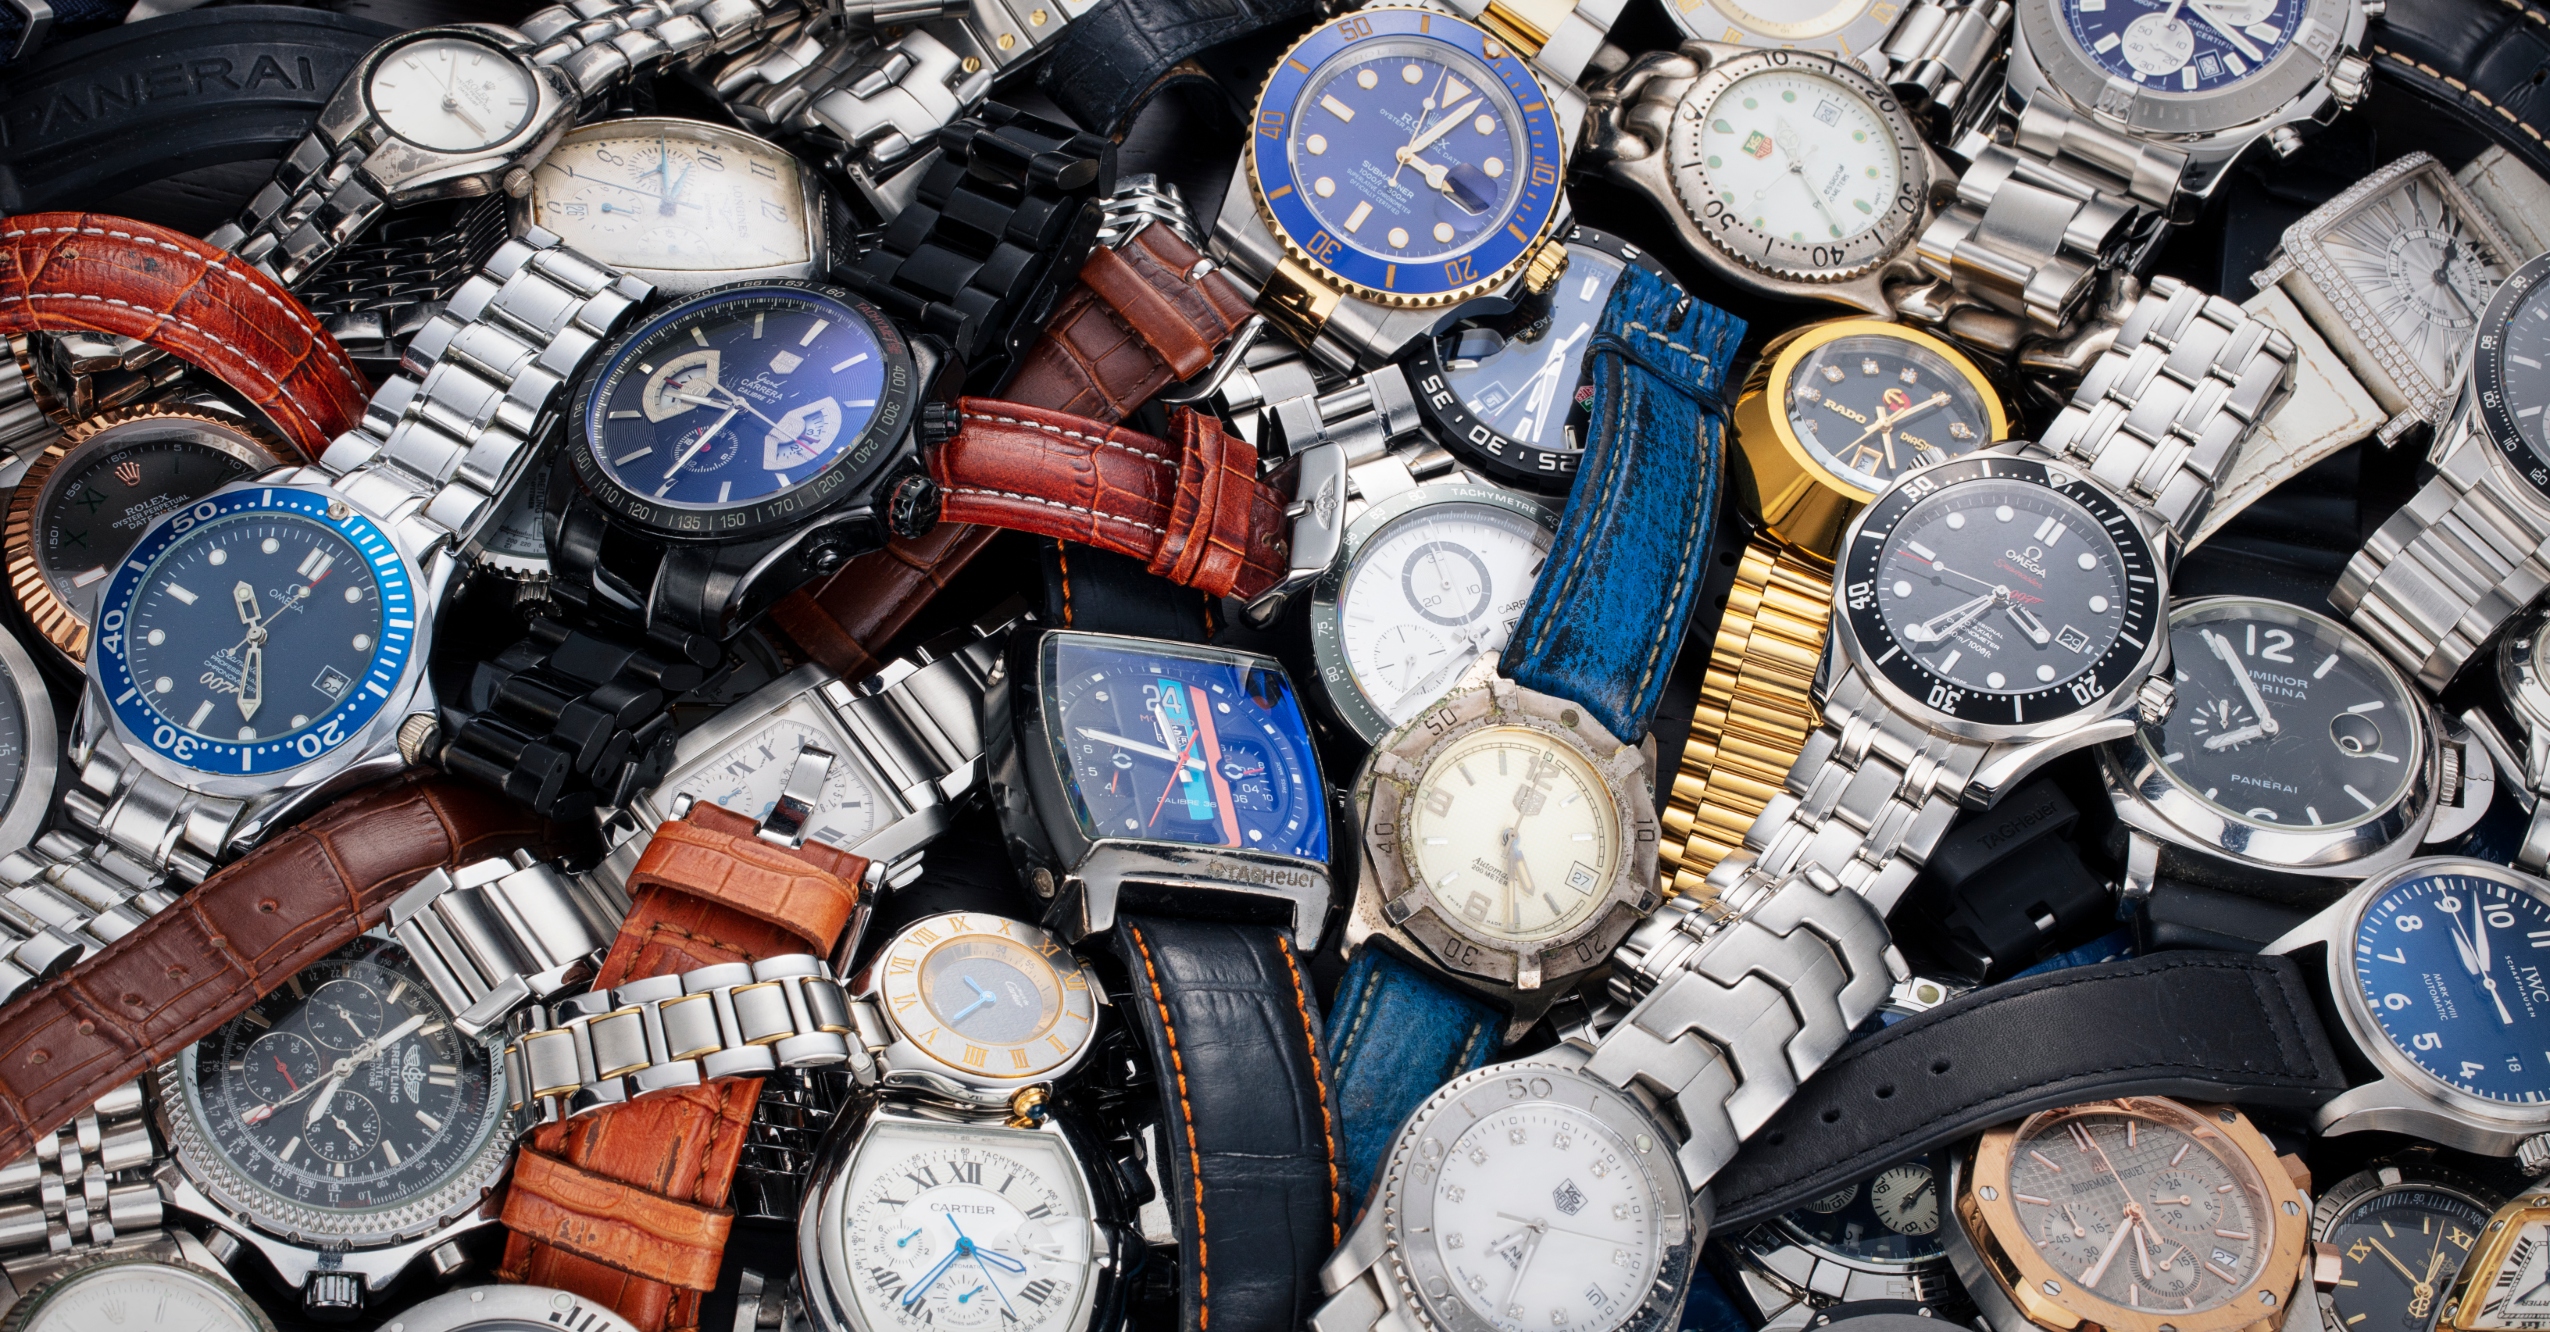 Graff Diamonds' $55 million dollar Hallucination watch | Luxury watches,  Graff diamonds, Expensive watches